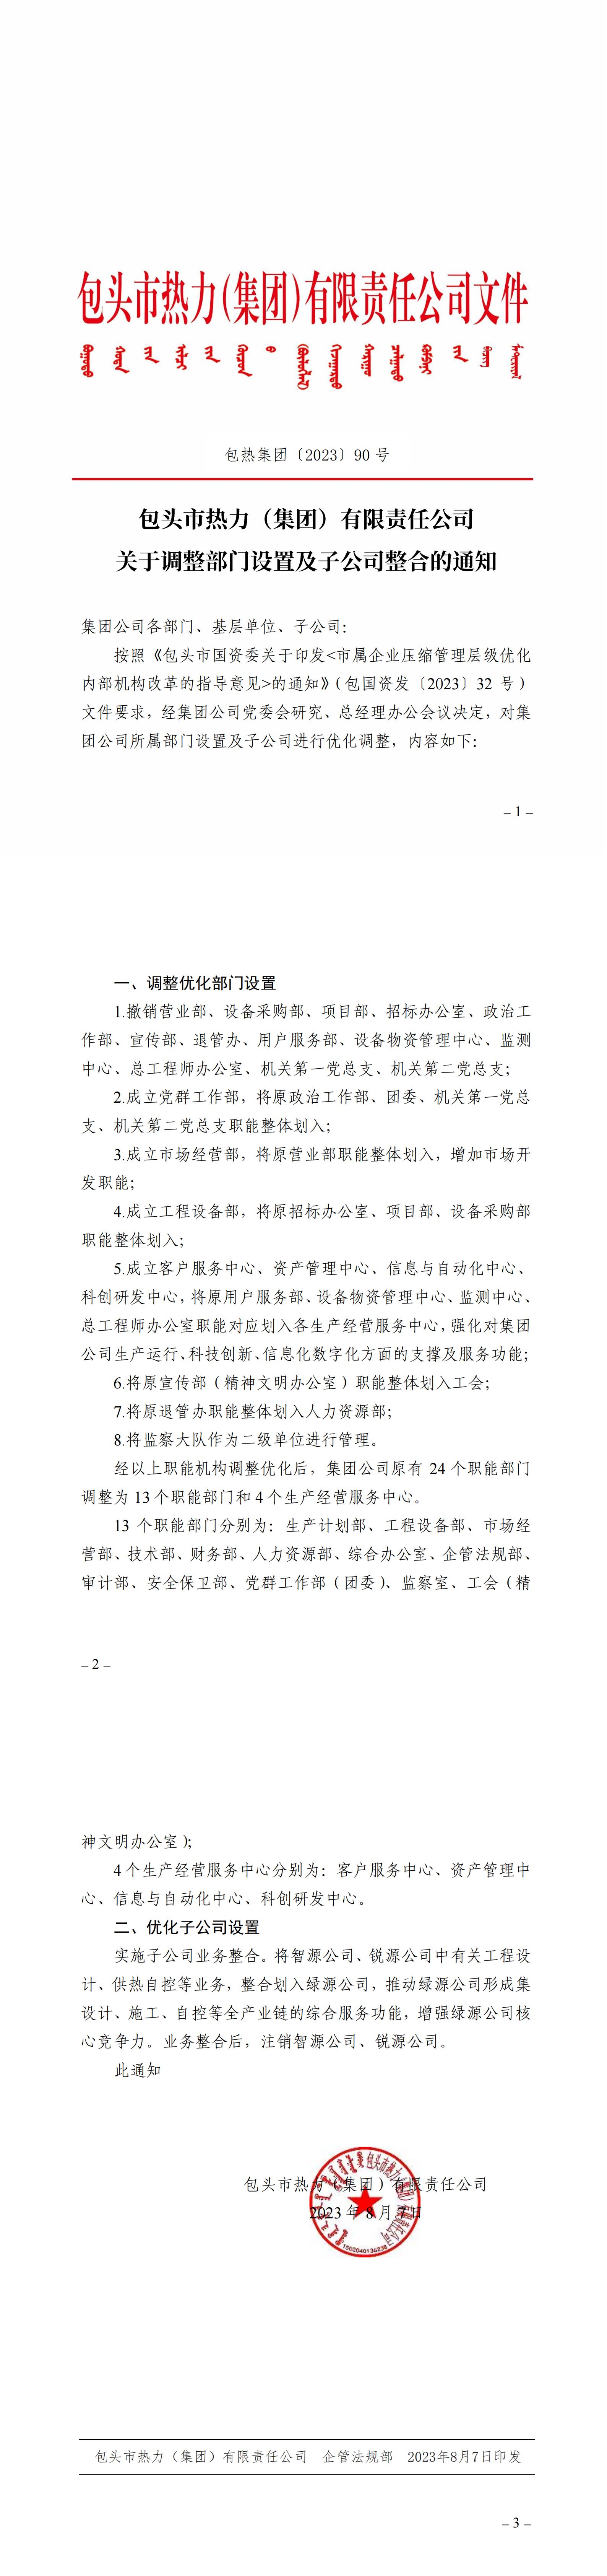 篮球赛押注(中国)有限公司关于调整部门设置及子公司整合的通知_00.jpg